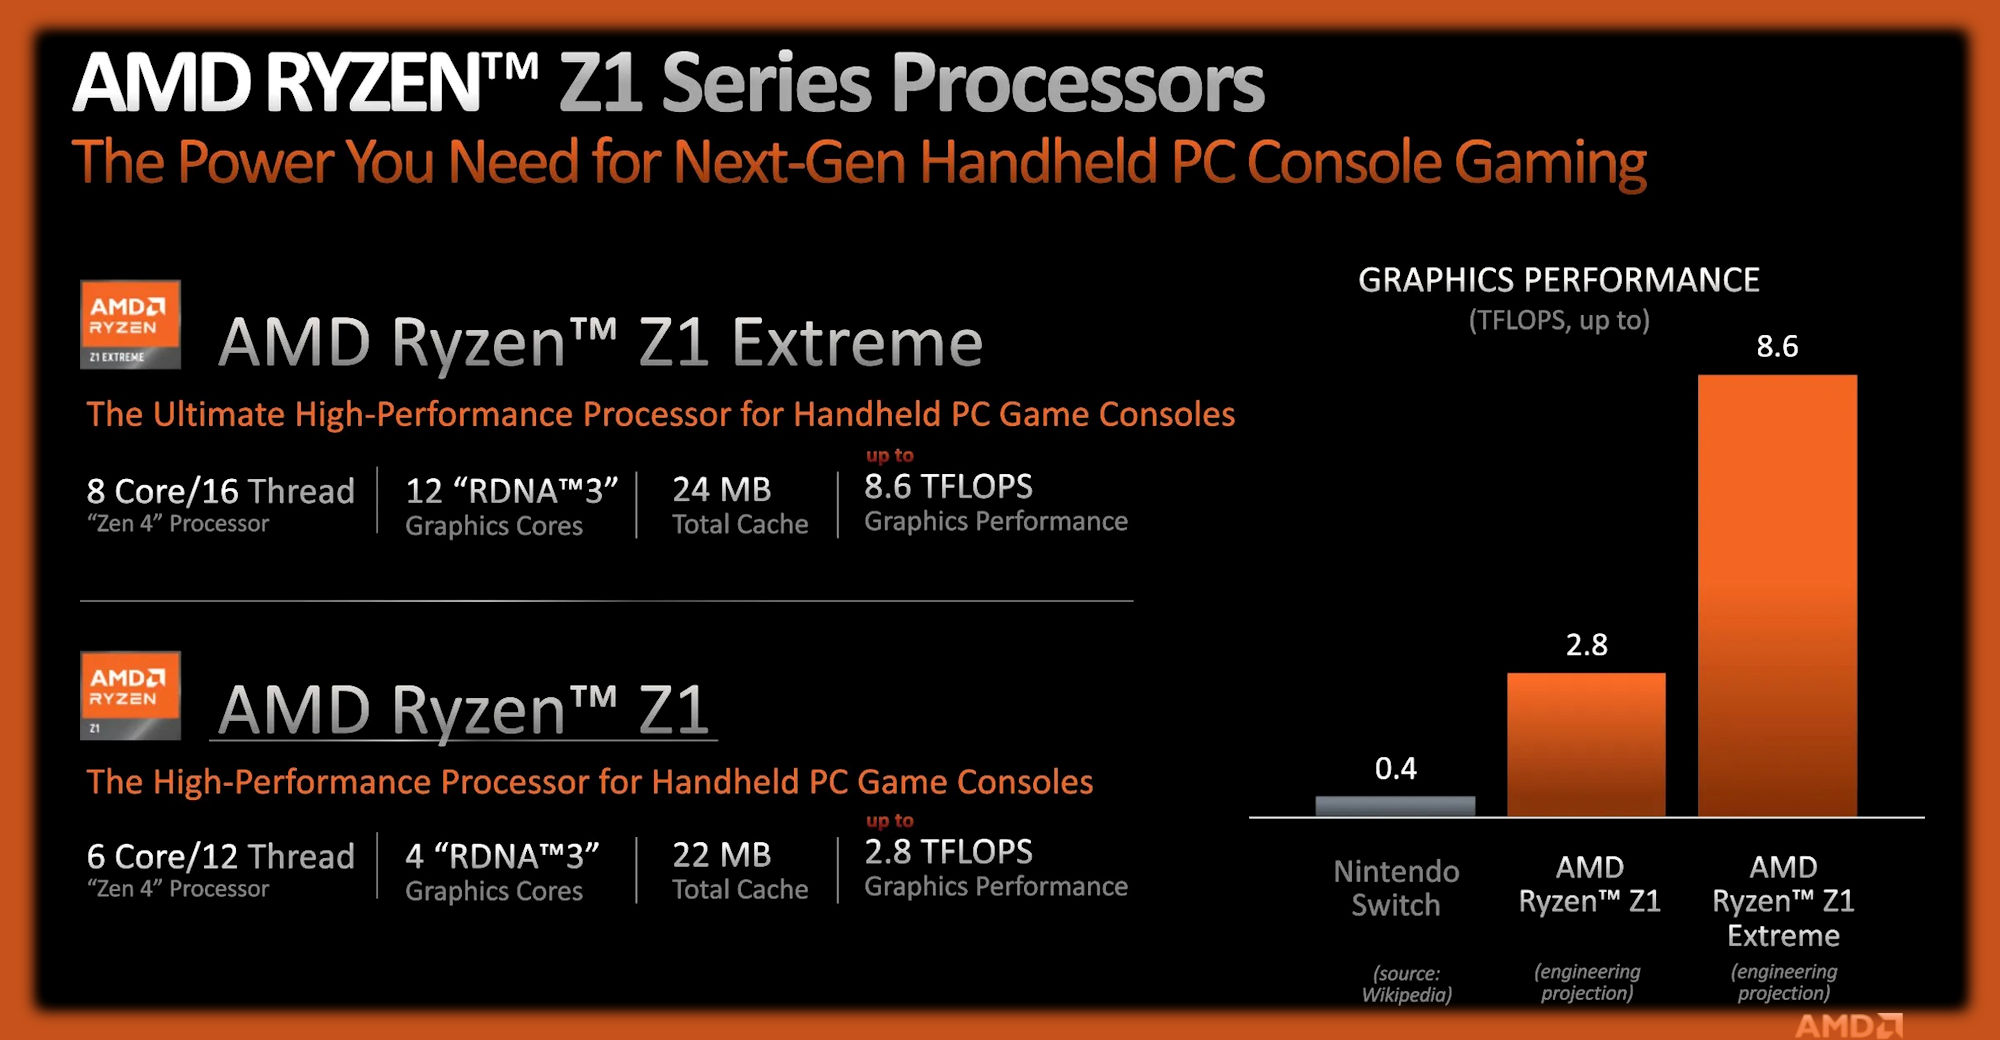 Diapositives d'informations détaillant les spécifications et les performances des processeurs AMD Ryzen Z1 et Z1 Extreme.